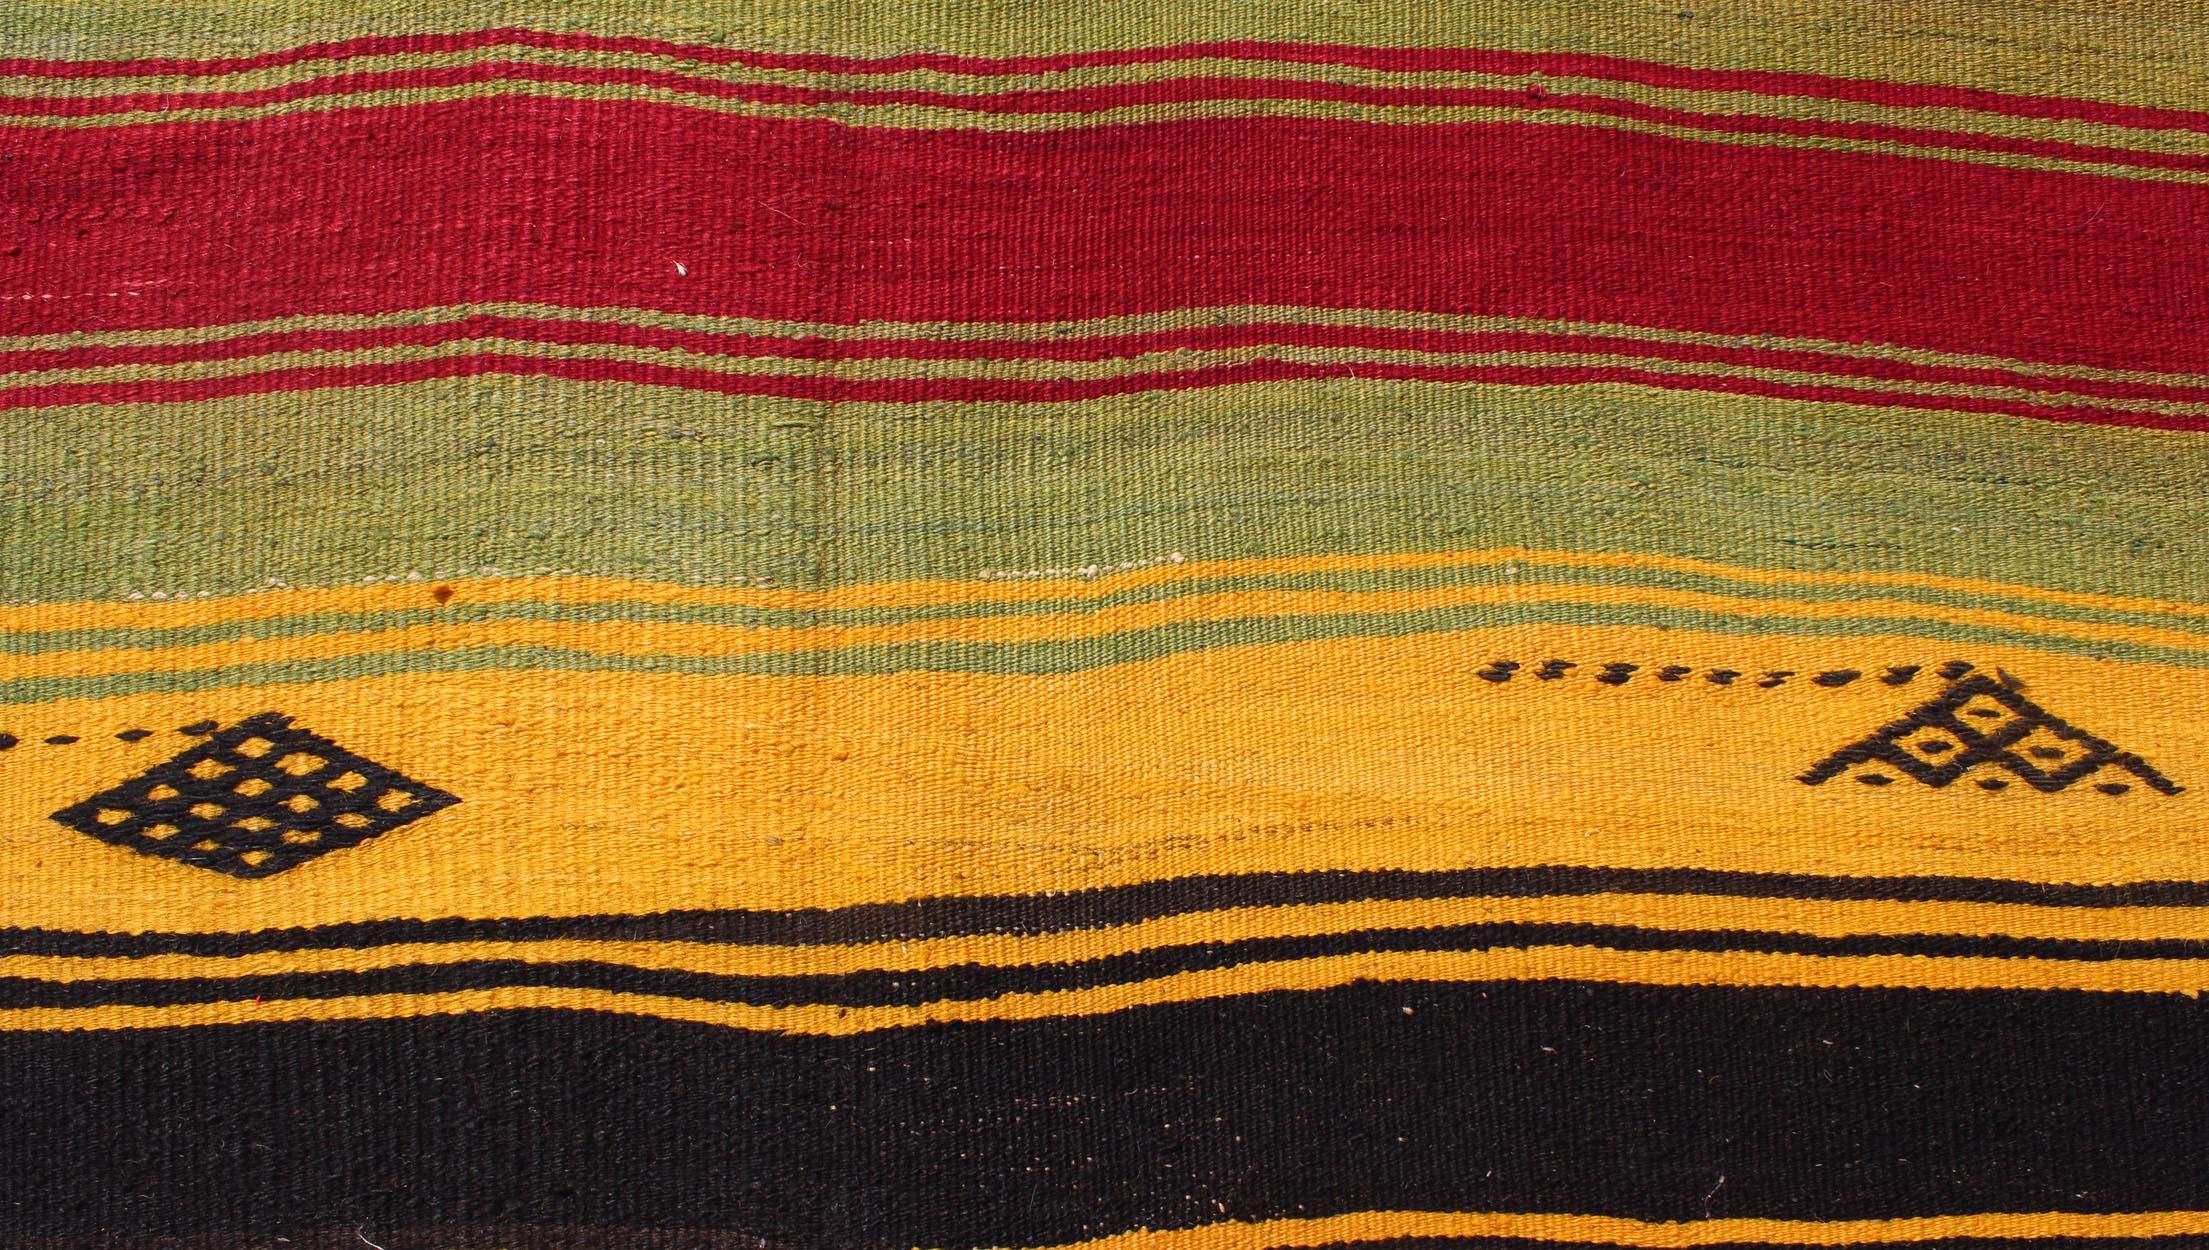 Colorful Vintage Turkish Kilim Rug with Subtle Tribal Shapes and Stripes Design For Sale 2